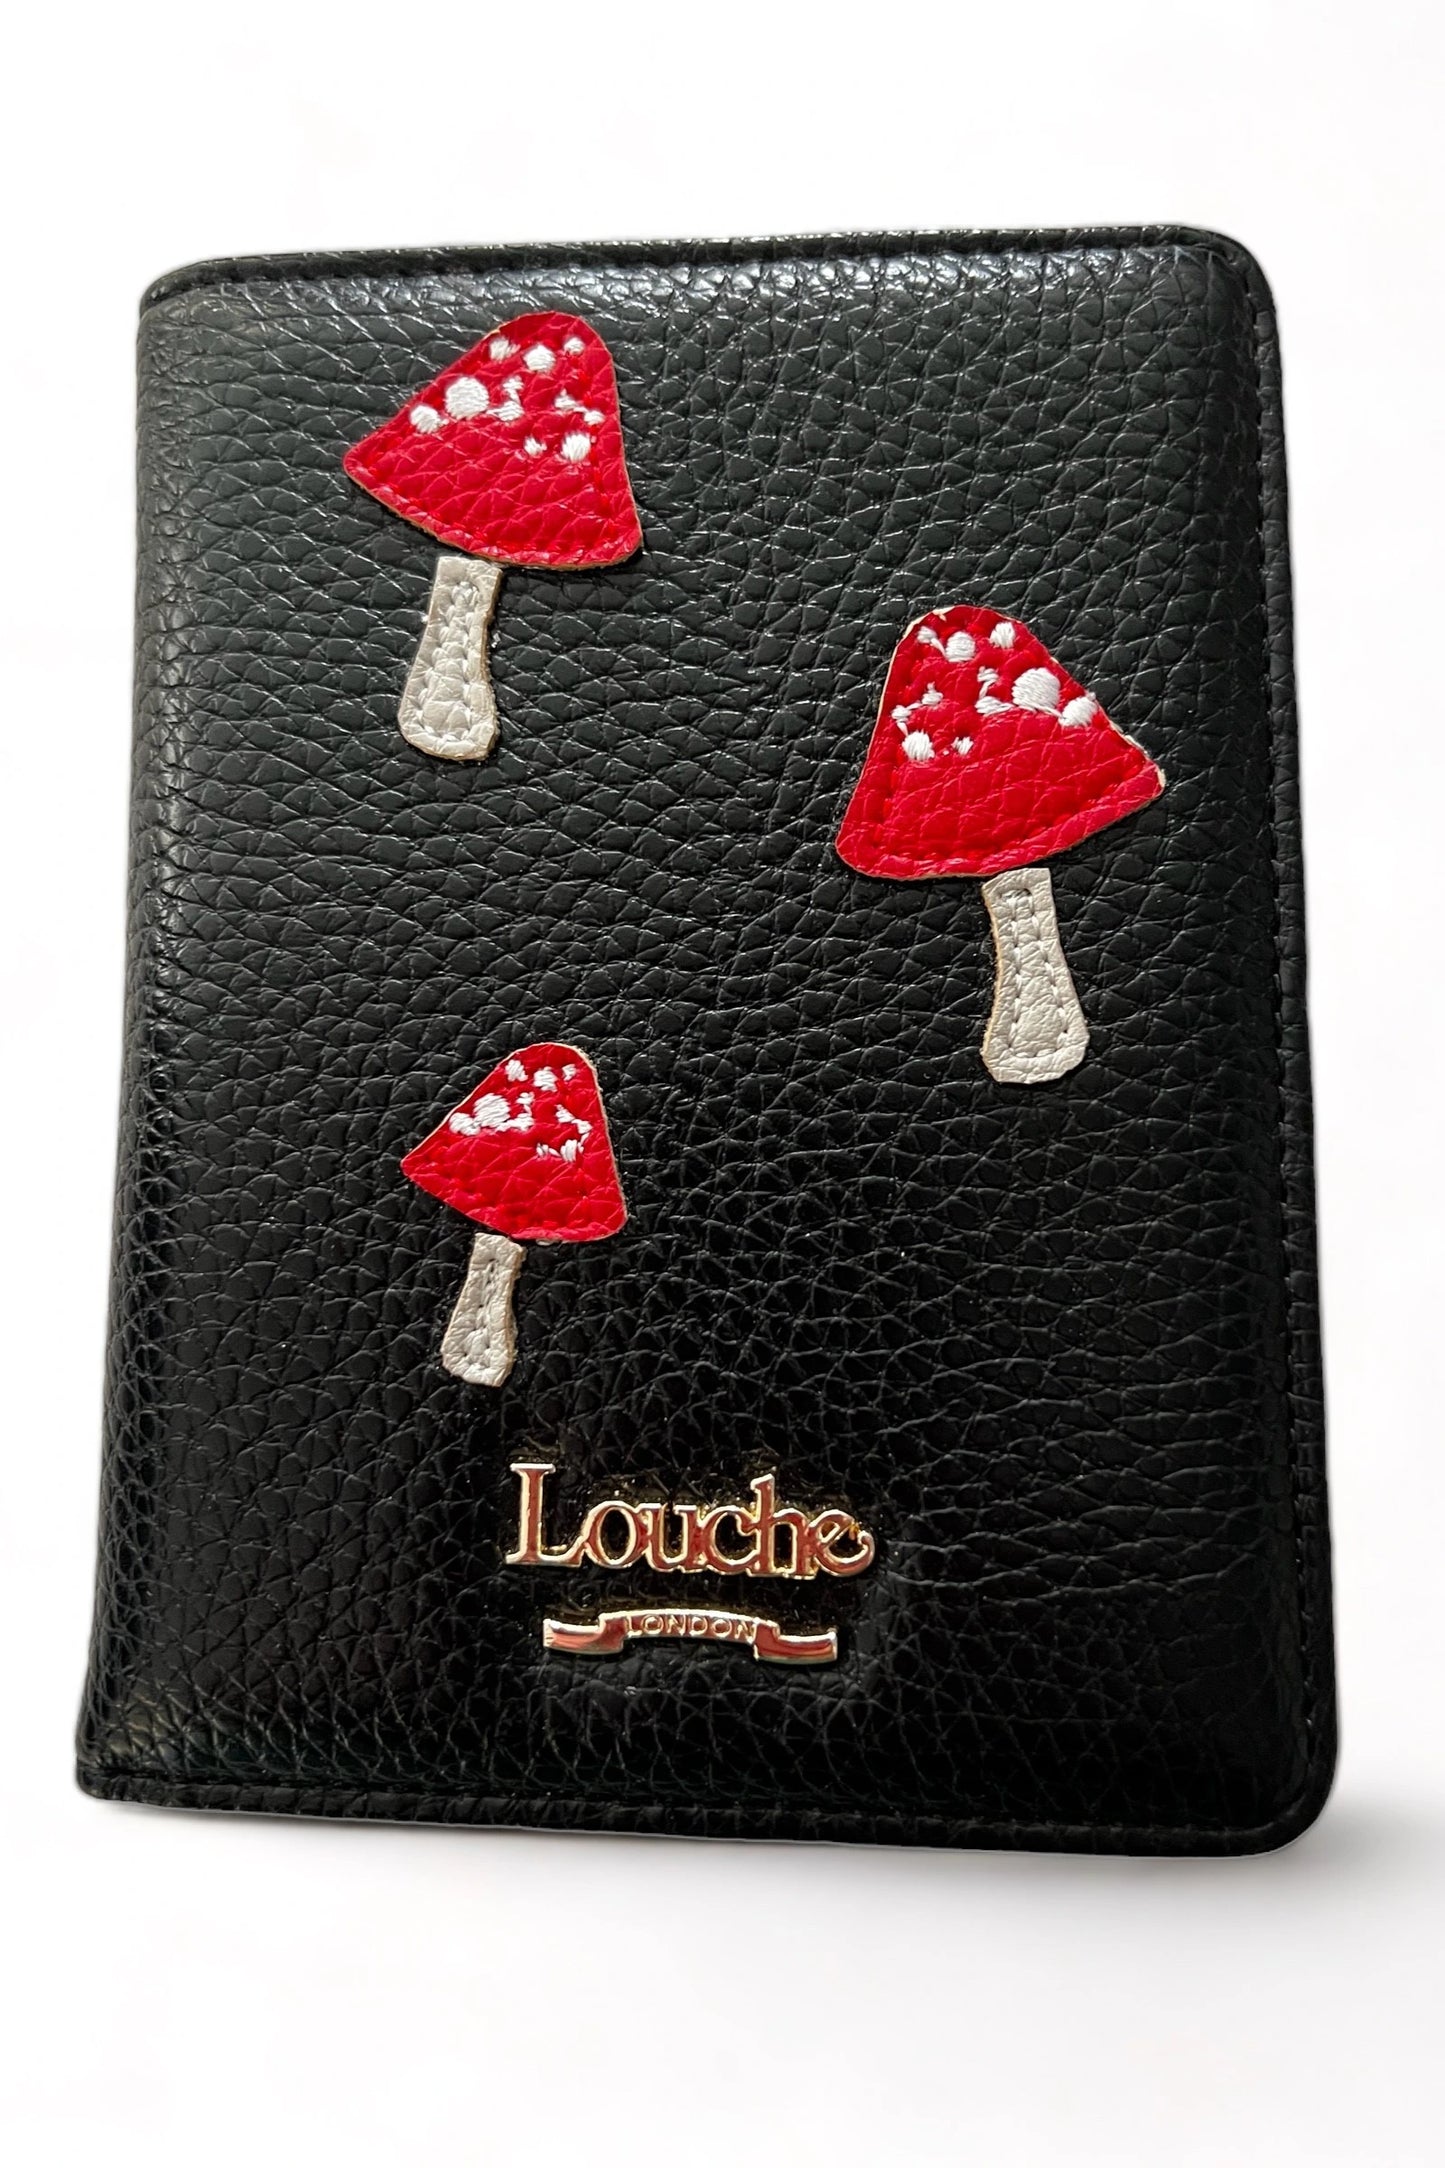 Louche Ophelia Mushroom Passport Cover